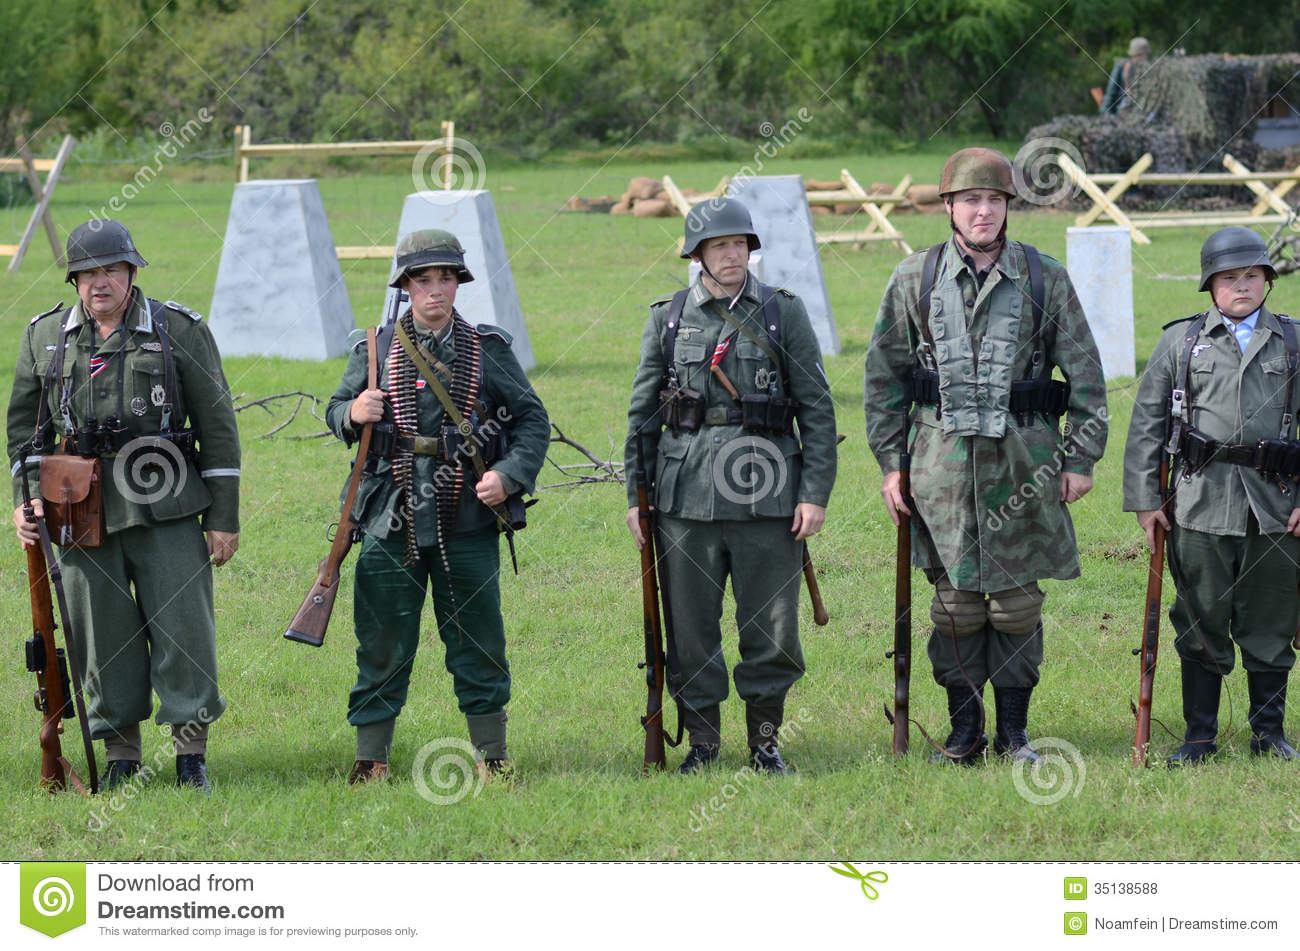 American Men Dressed Up As German Soldiers In Historical Reenactment    